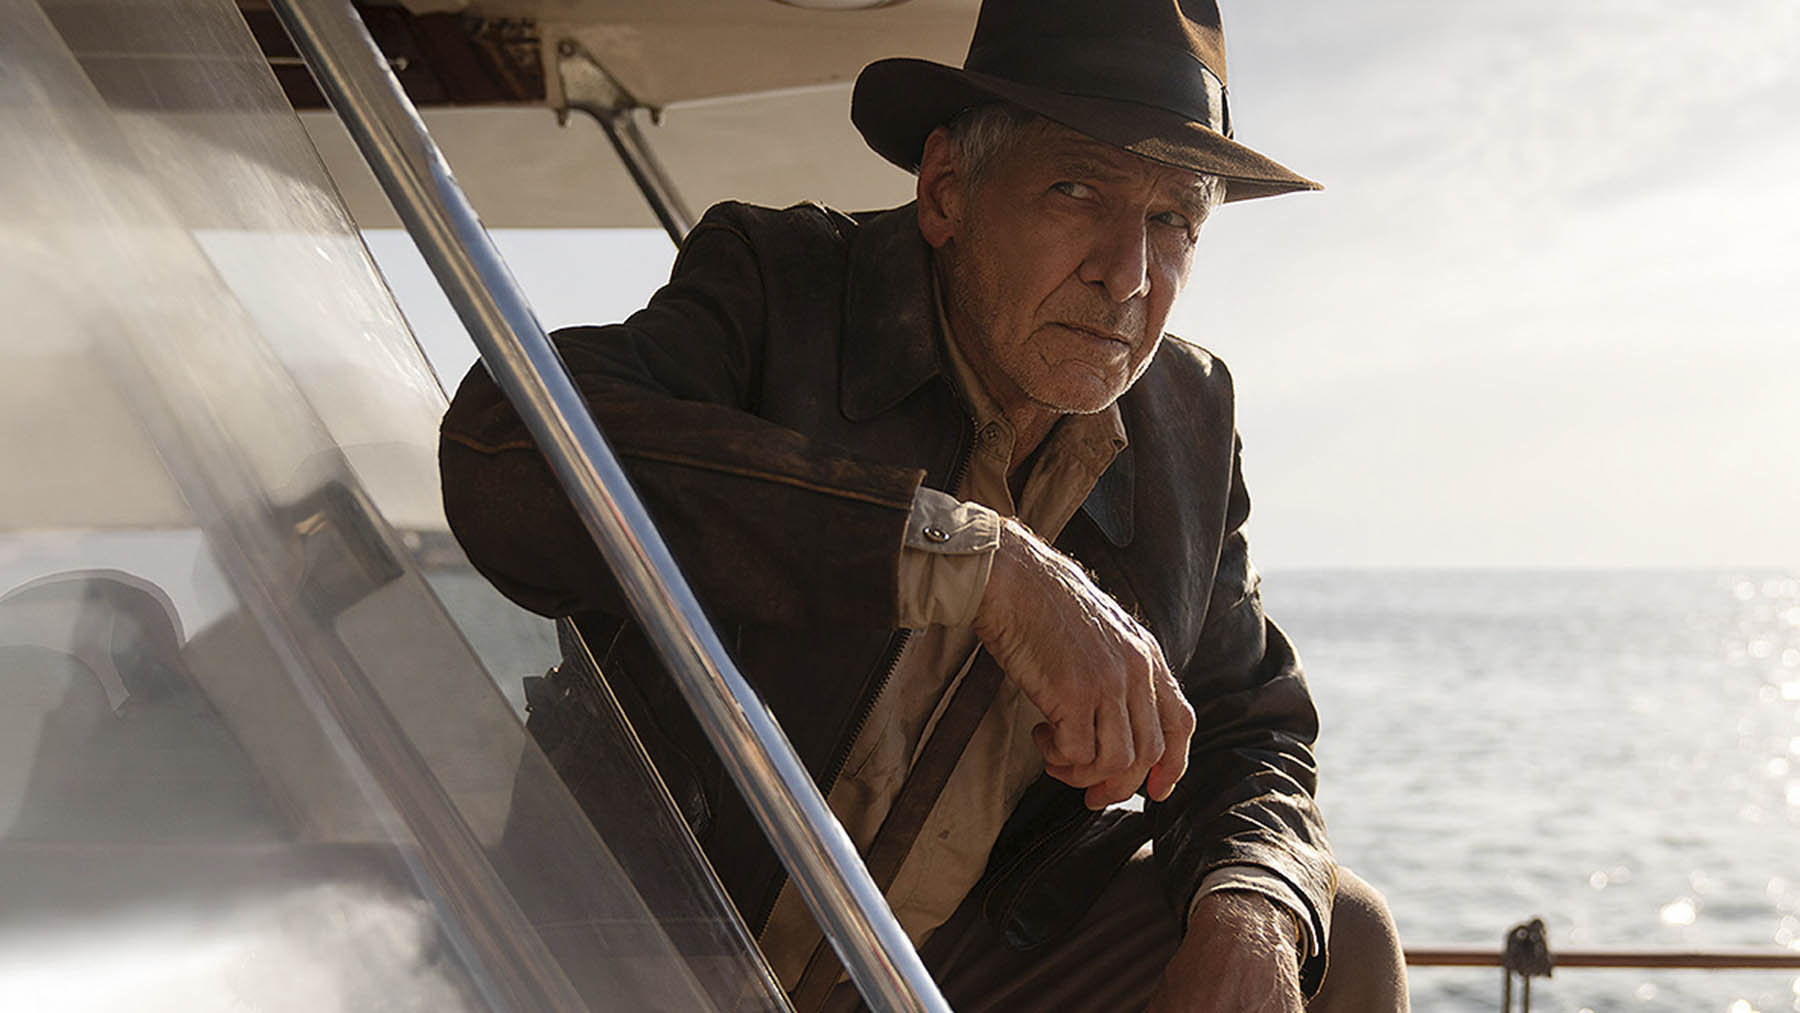 Nuevo spot de ‘Indiana Jones y el Dial del Destino’: Indy parece en forma para su última aventura